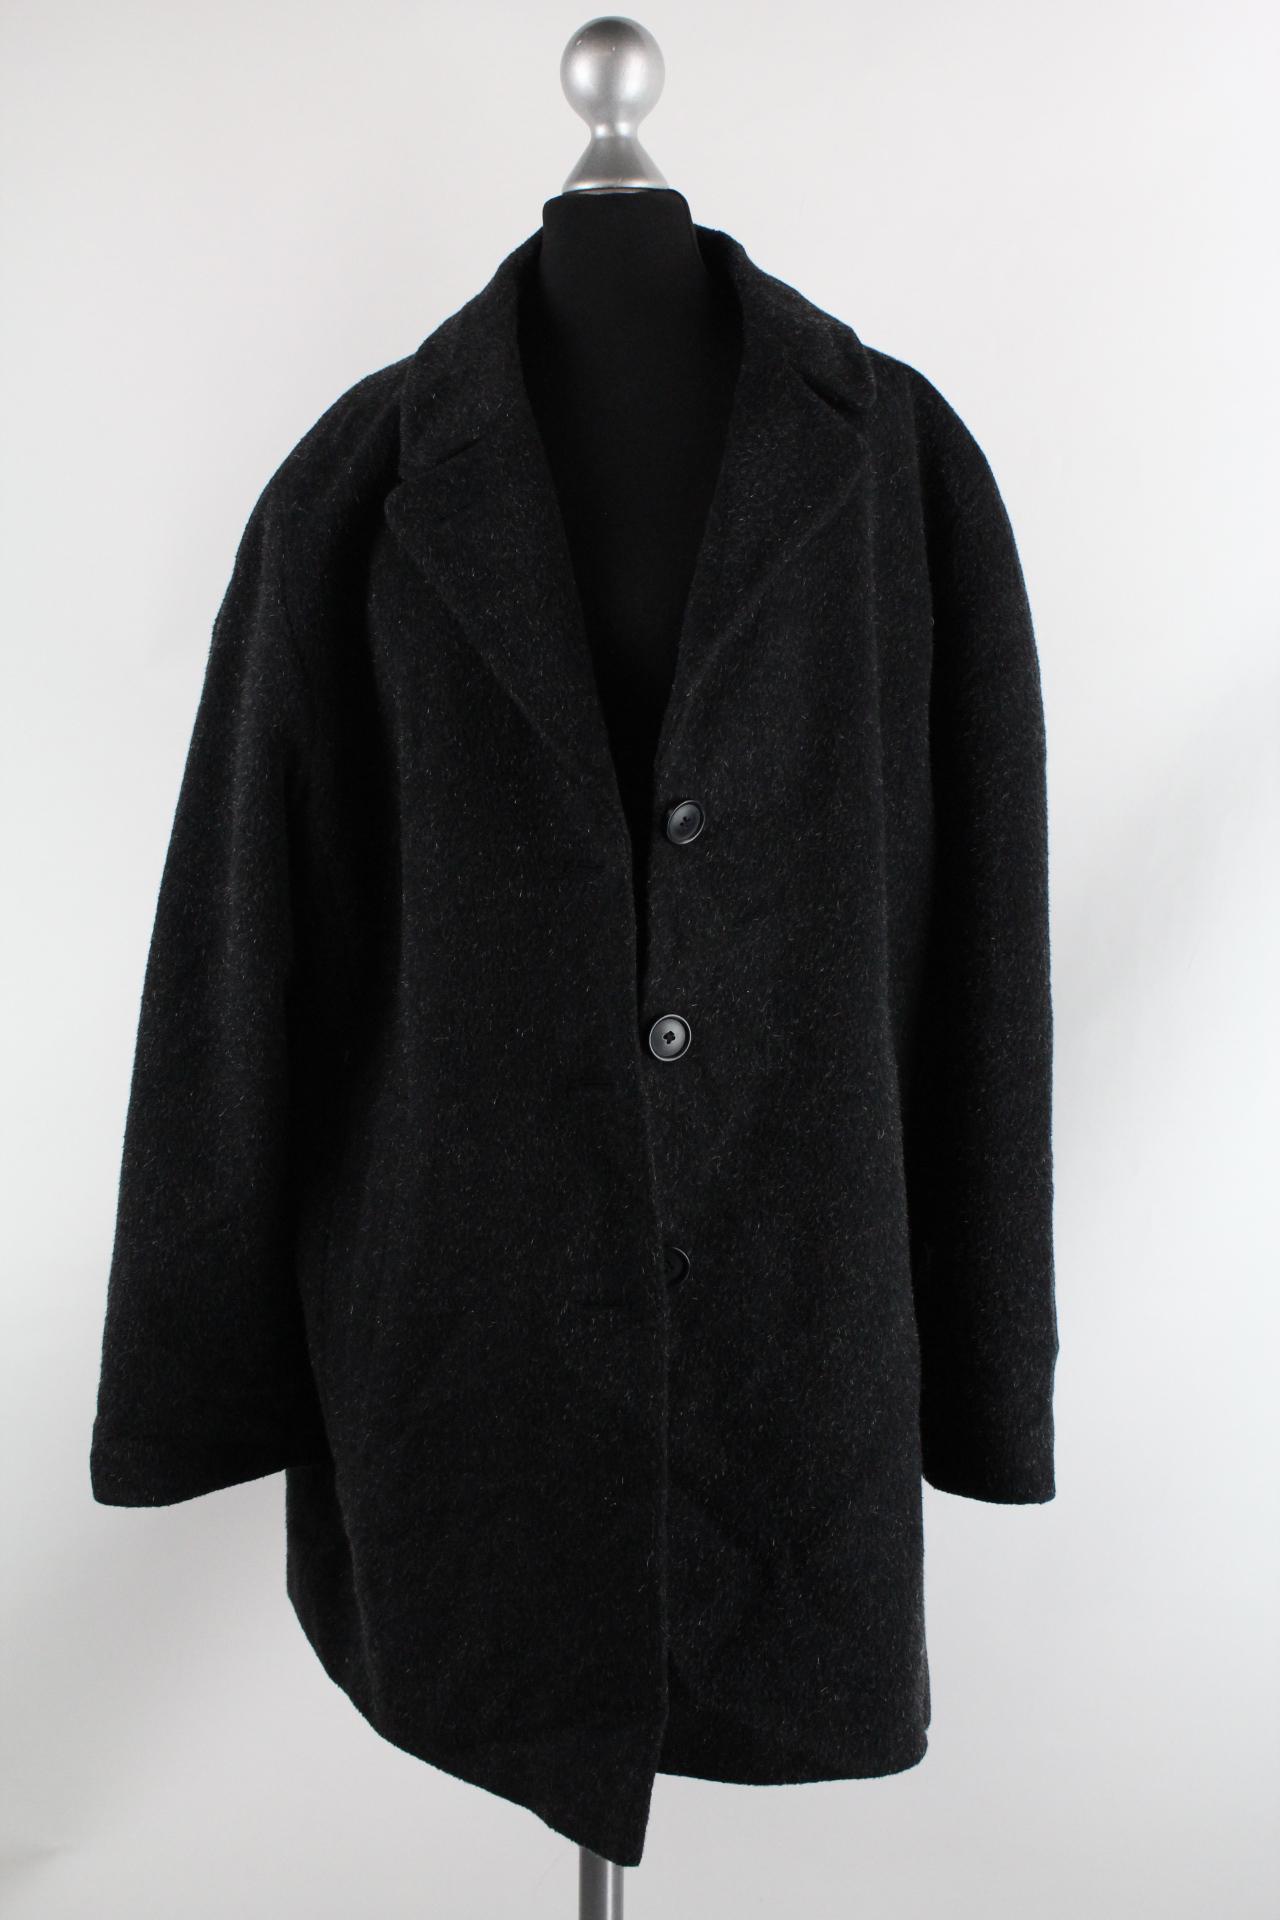 CANDA Damen-Mantel schwarzgrau Größe 44